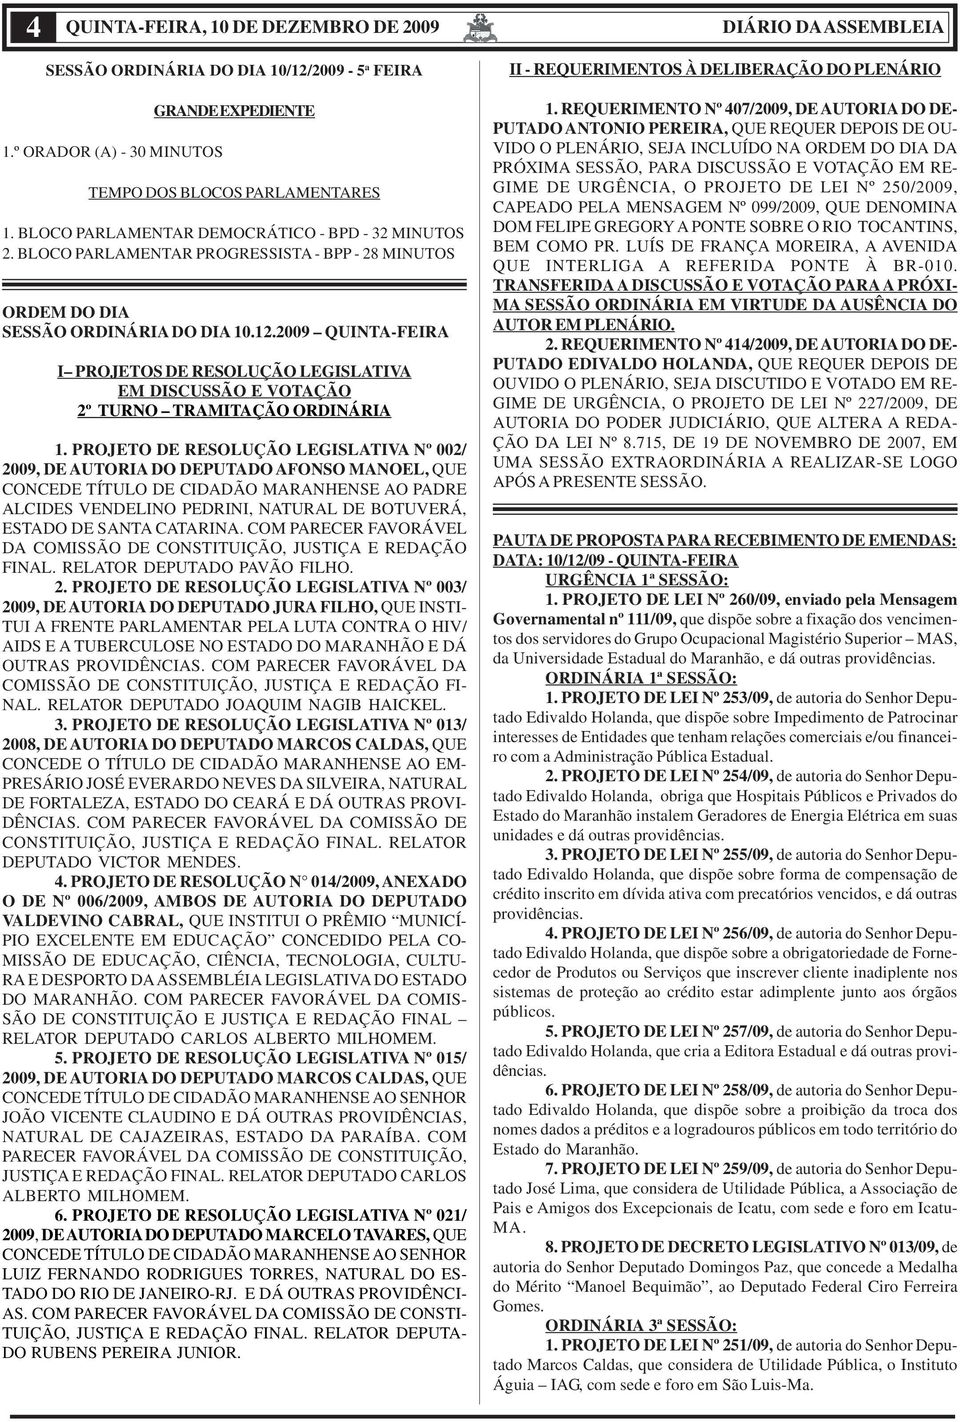 BLOCO PARLAMENTAR PROGRESSISTA - BPP - 28 MINUTOS ORDEM DO DIA SESSÃO ORDINÁRIA DO DIA 10.12.